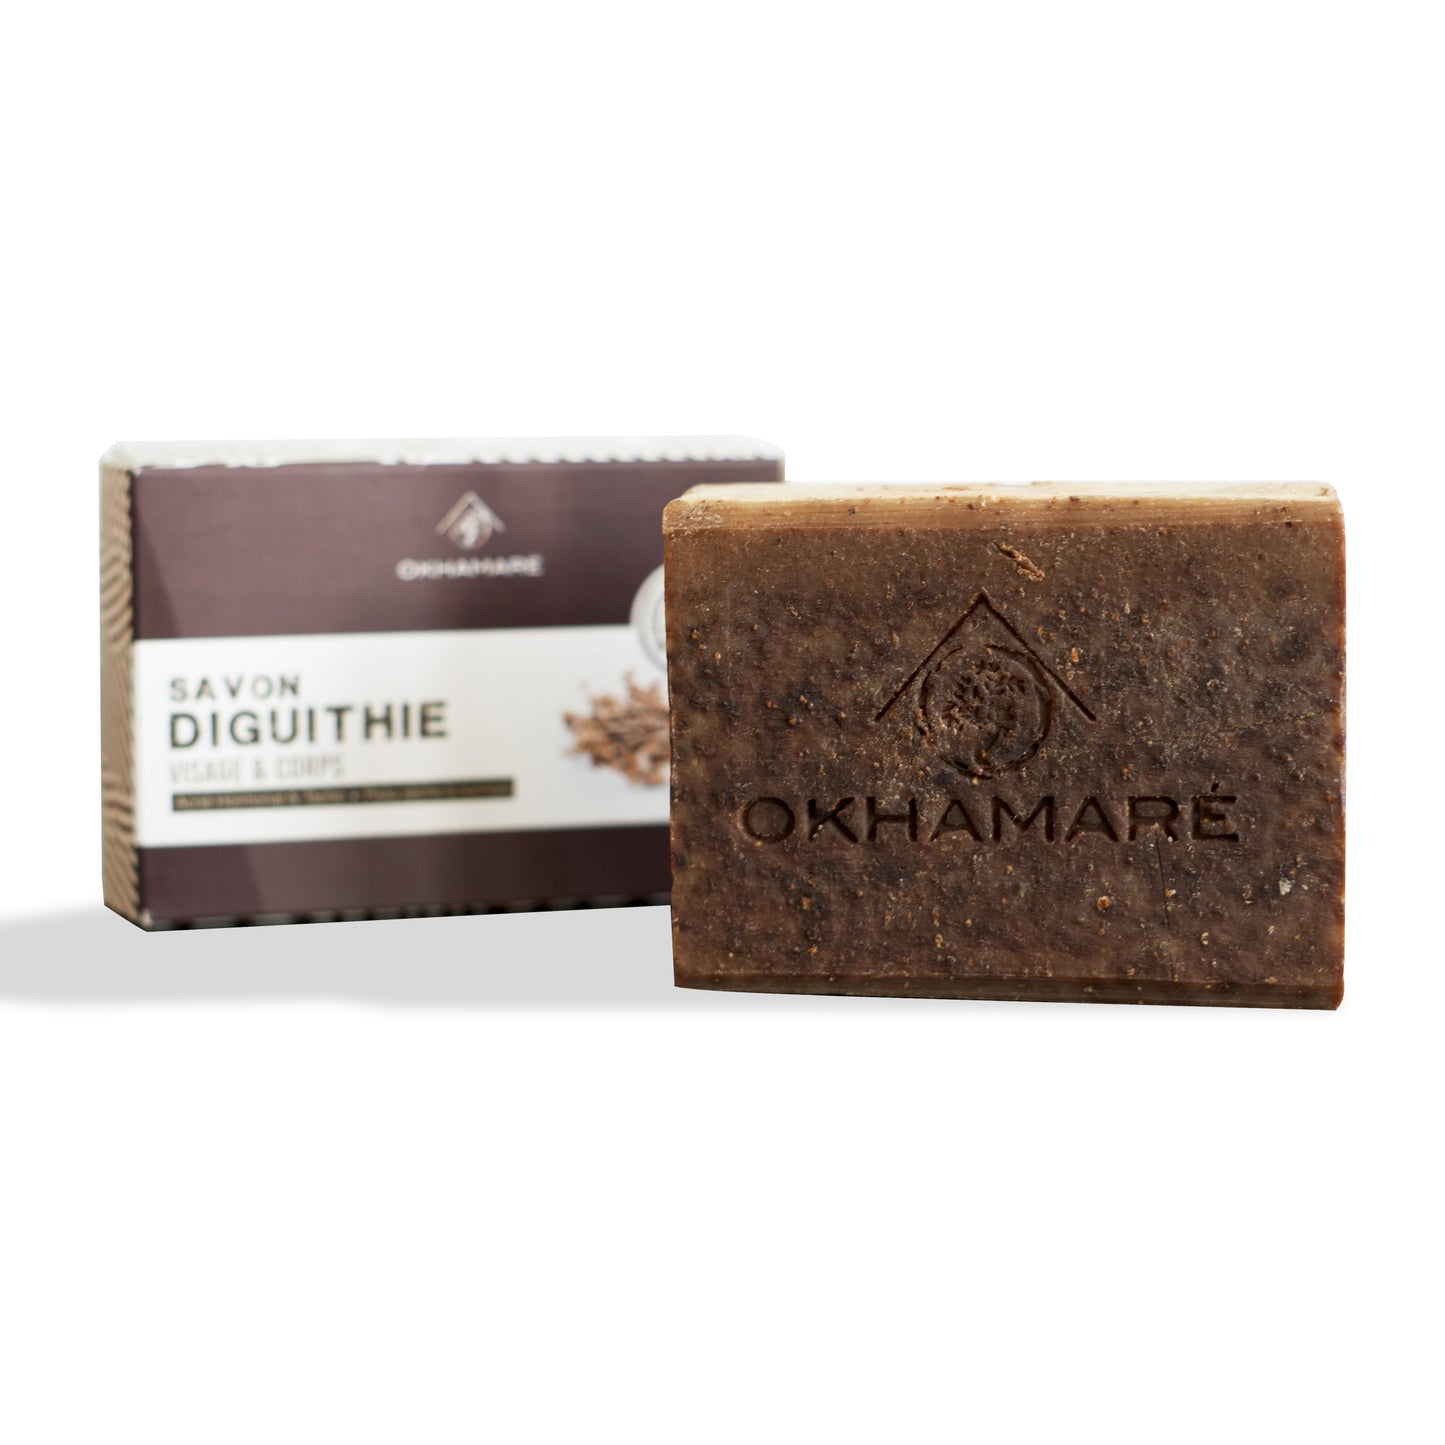 Soap Diguithié